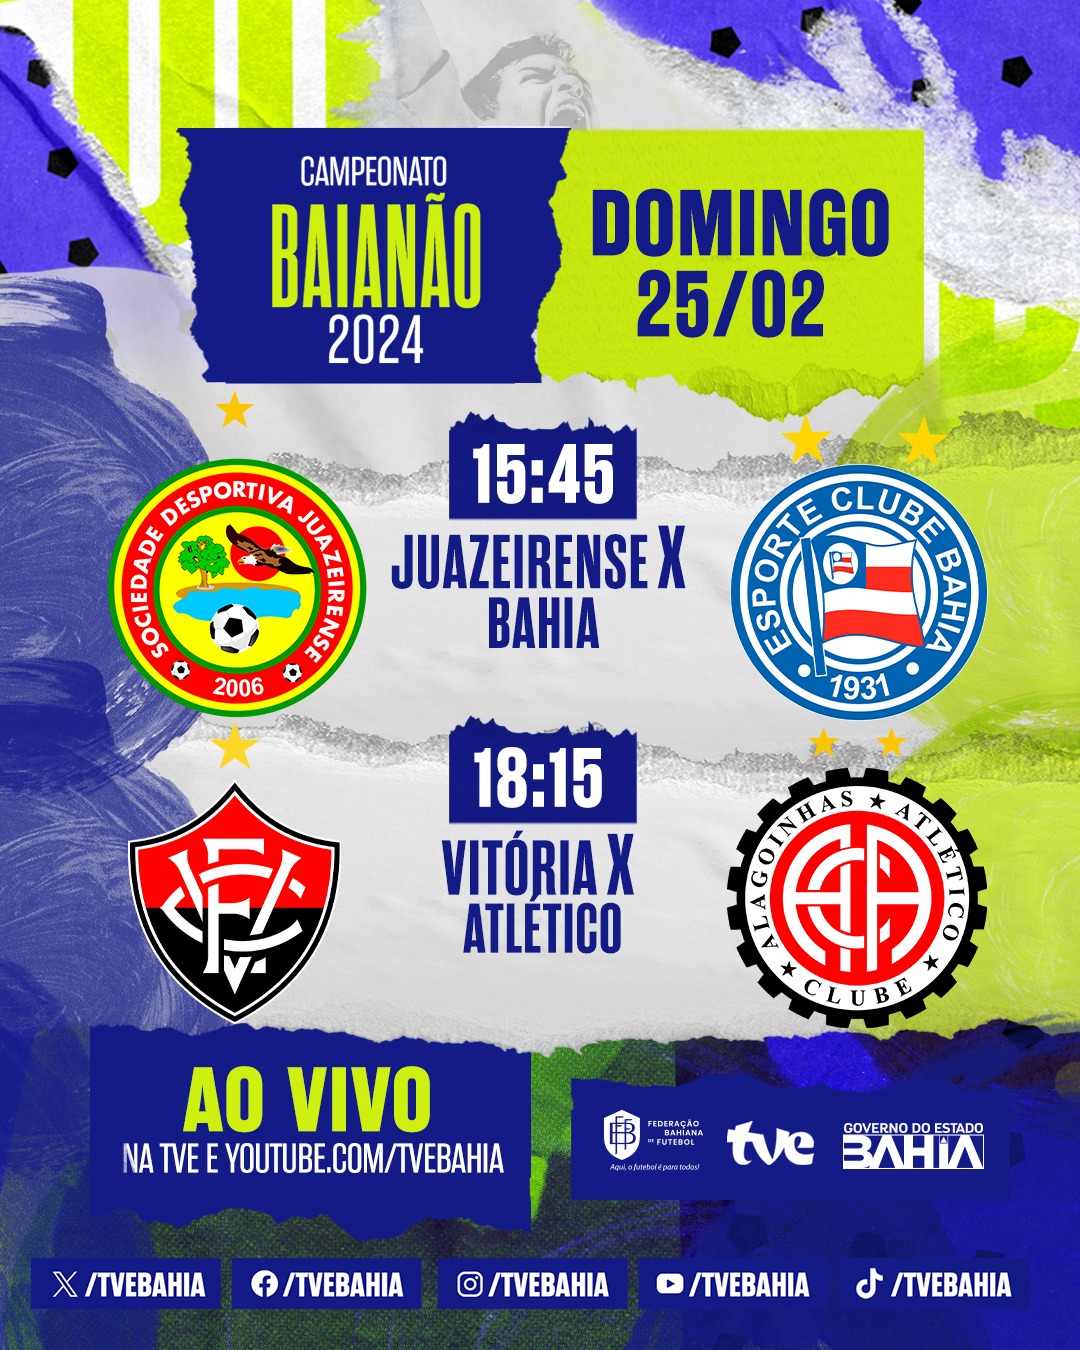 No momento você está vendo Juazeirense x Bahia e Vitória x Atlético neste domingo na TVE